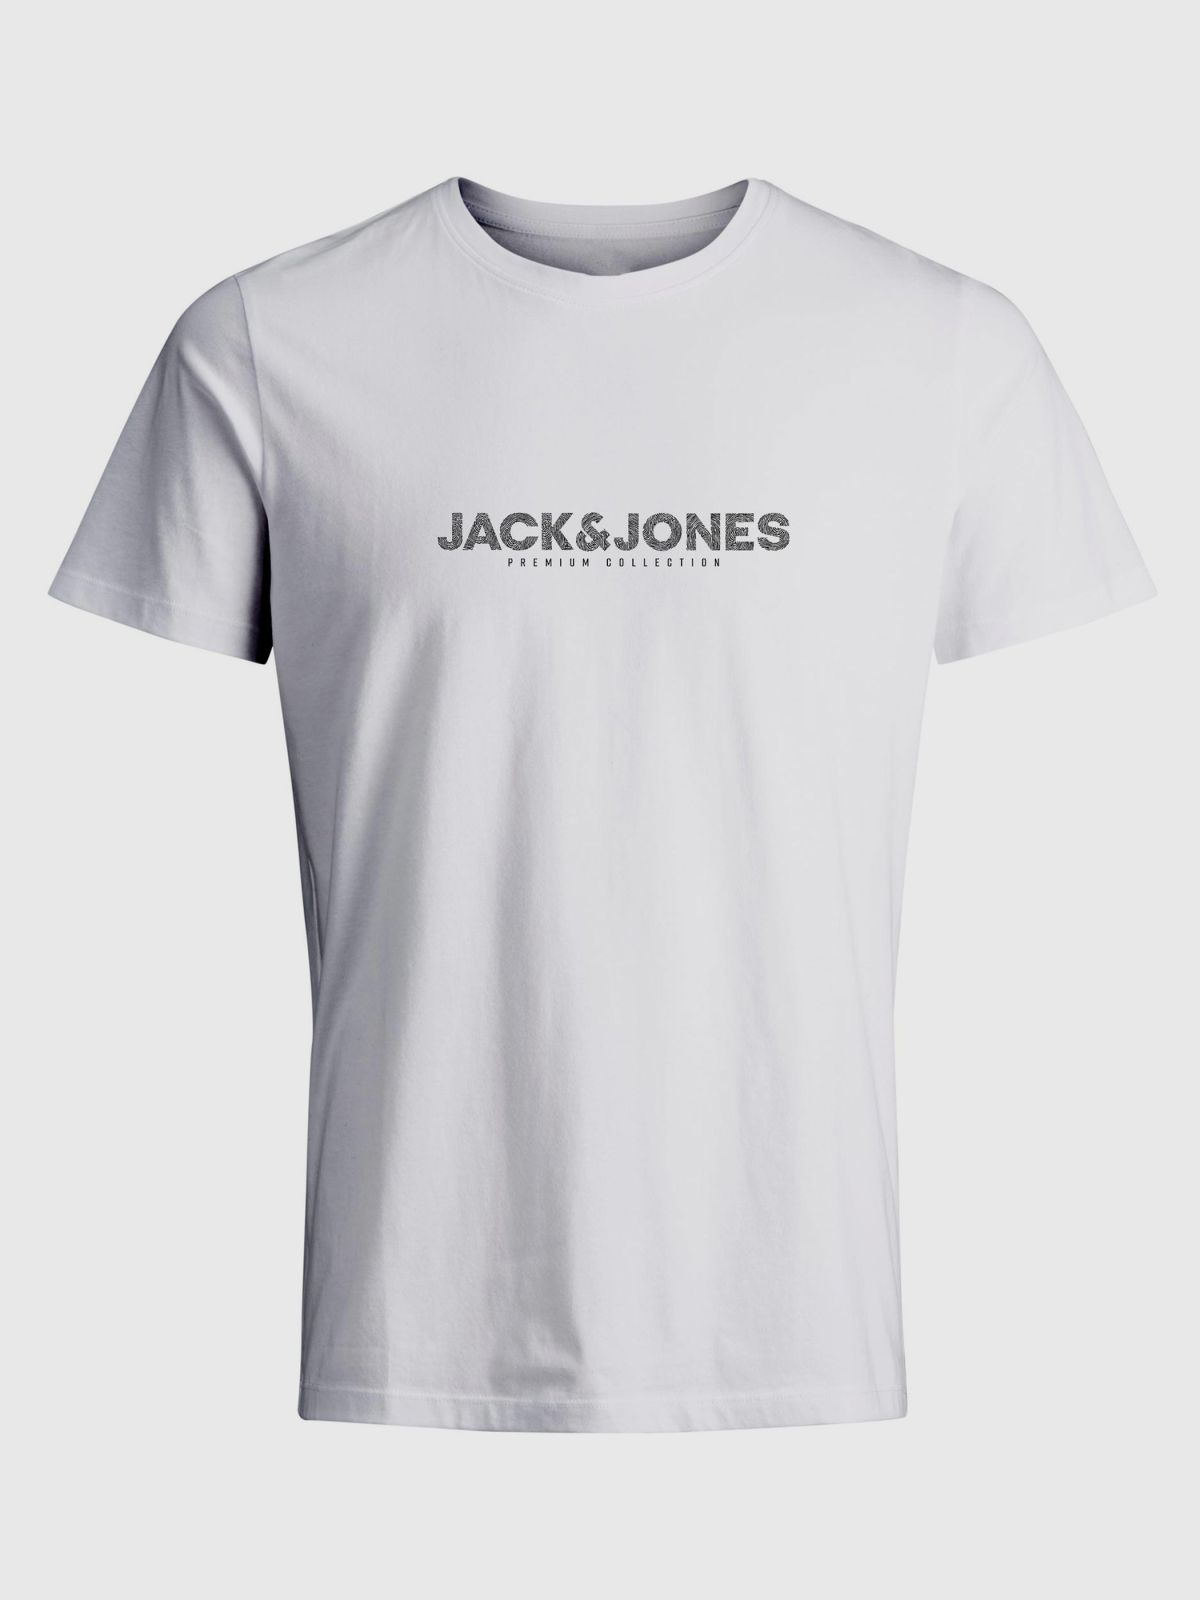  טי שירט עם הדפס לוגו / גברים של JACK AND JONES